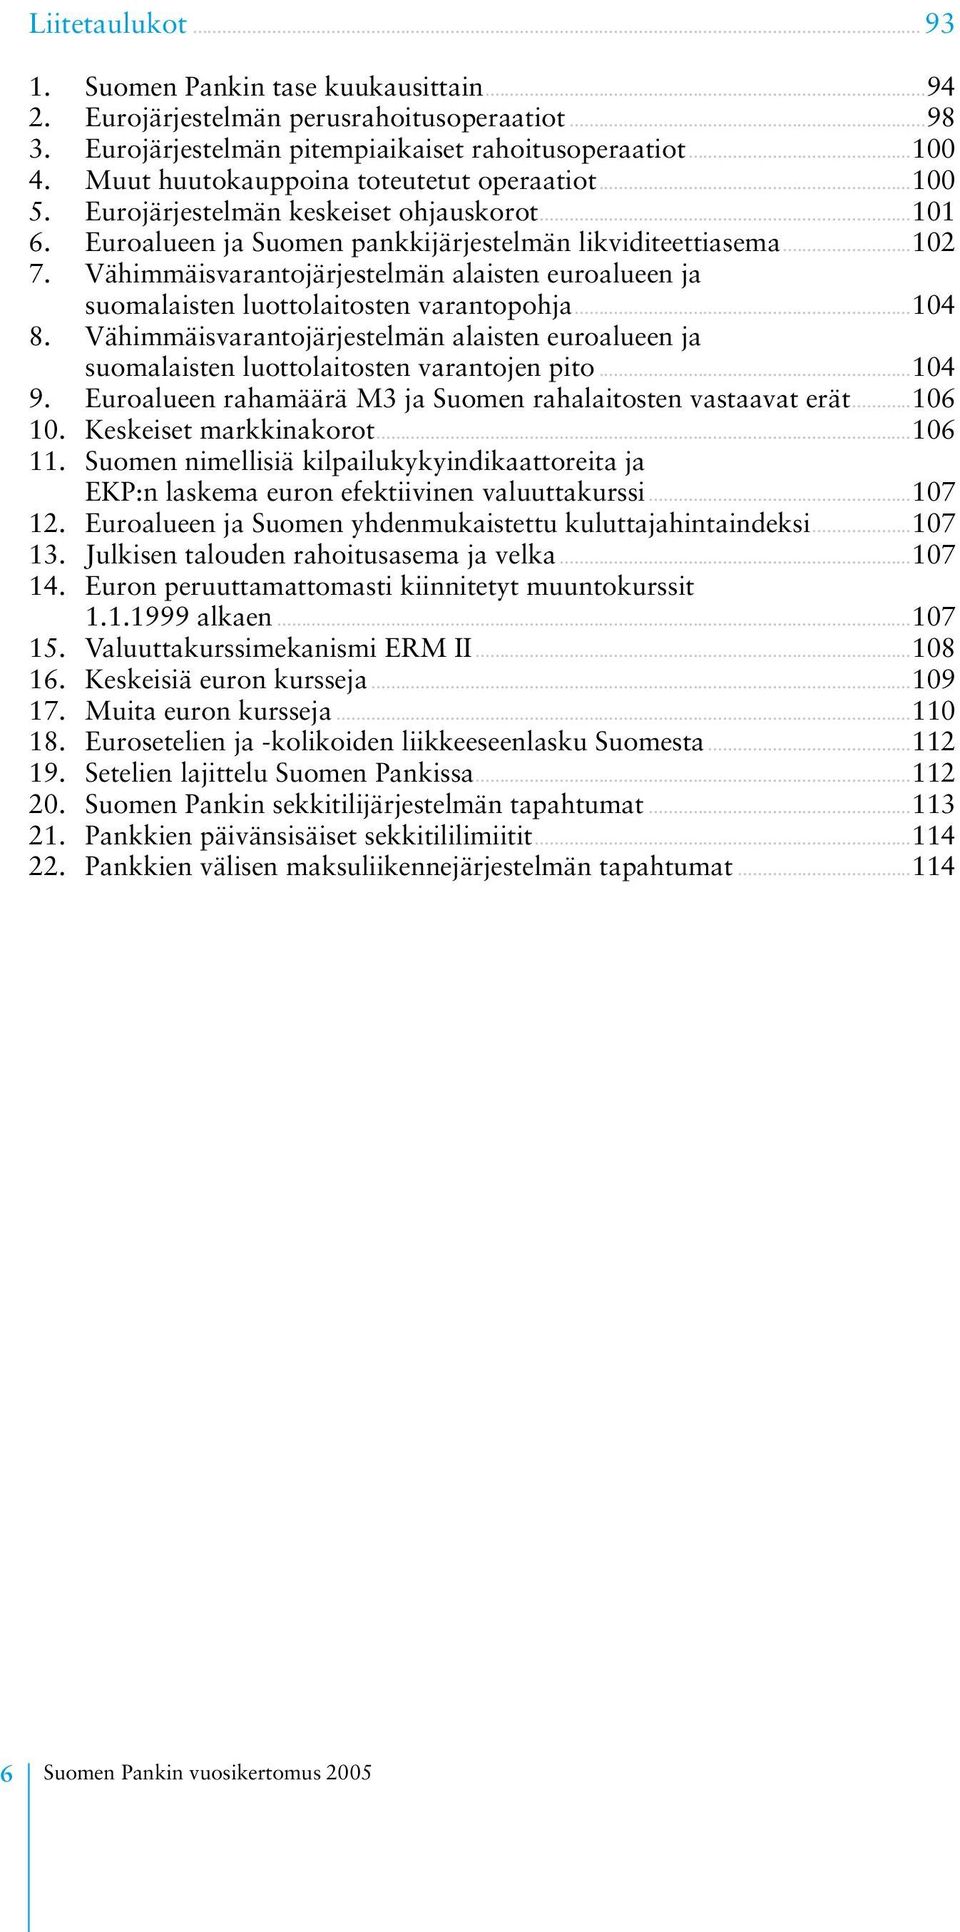 Vähimmäisvarantojärjestelmän alaisten euroalueen ja suomalaisten luottolaitosten varantopohja...104 8. Vähimmäisvarantojärjestelmän alaisten euroalueen ja suomalaisten luottolaitosten varantojen pito.